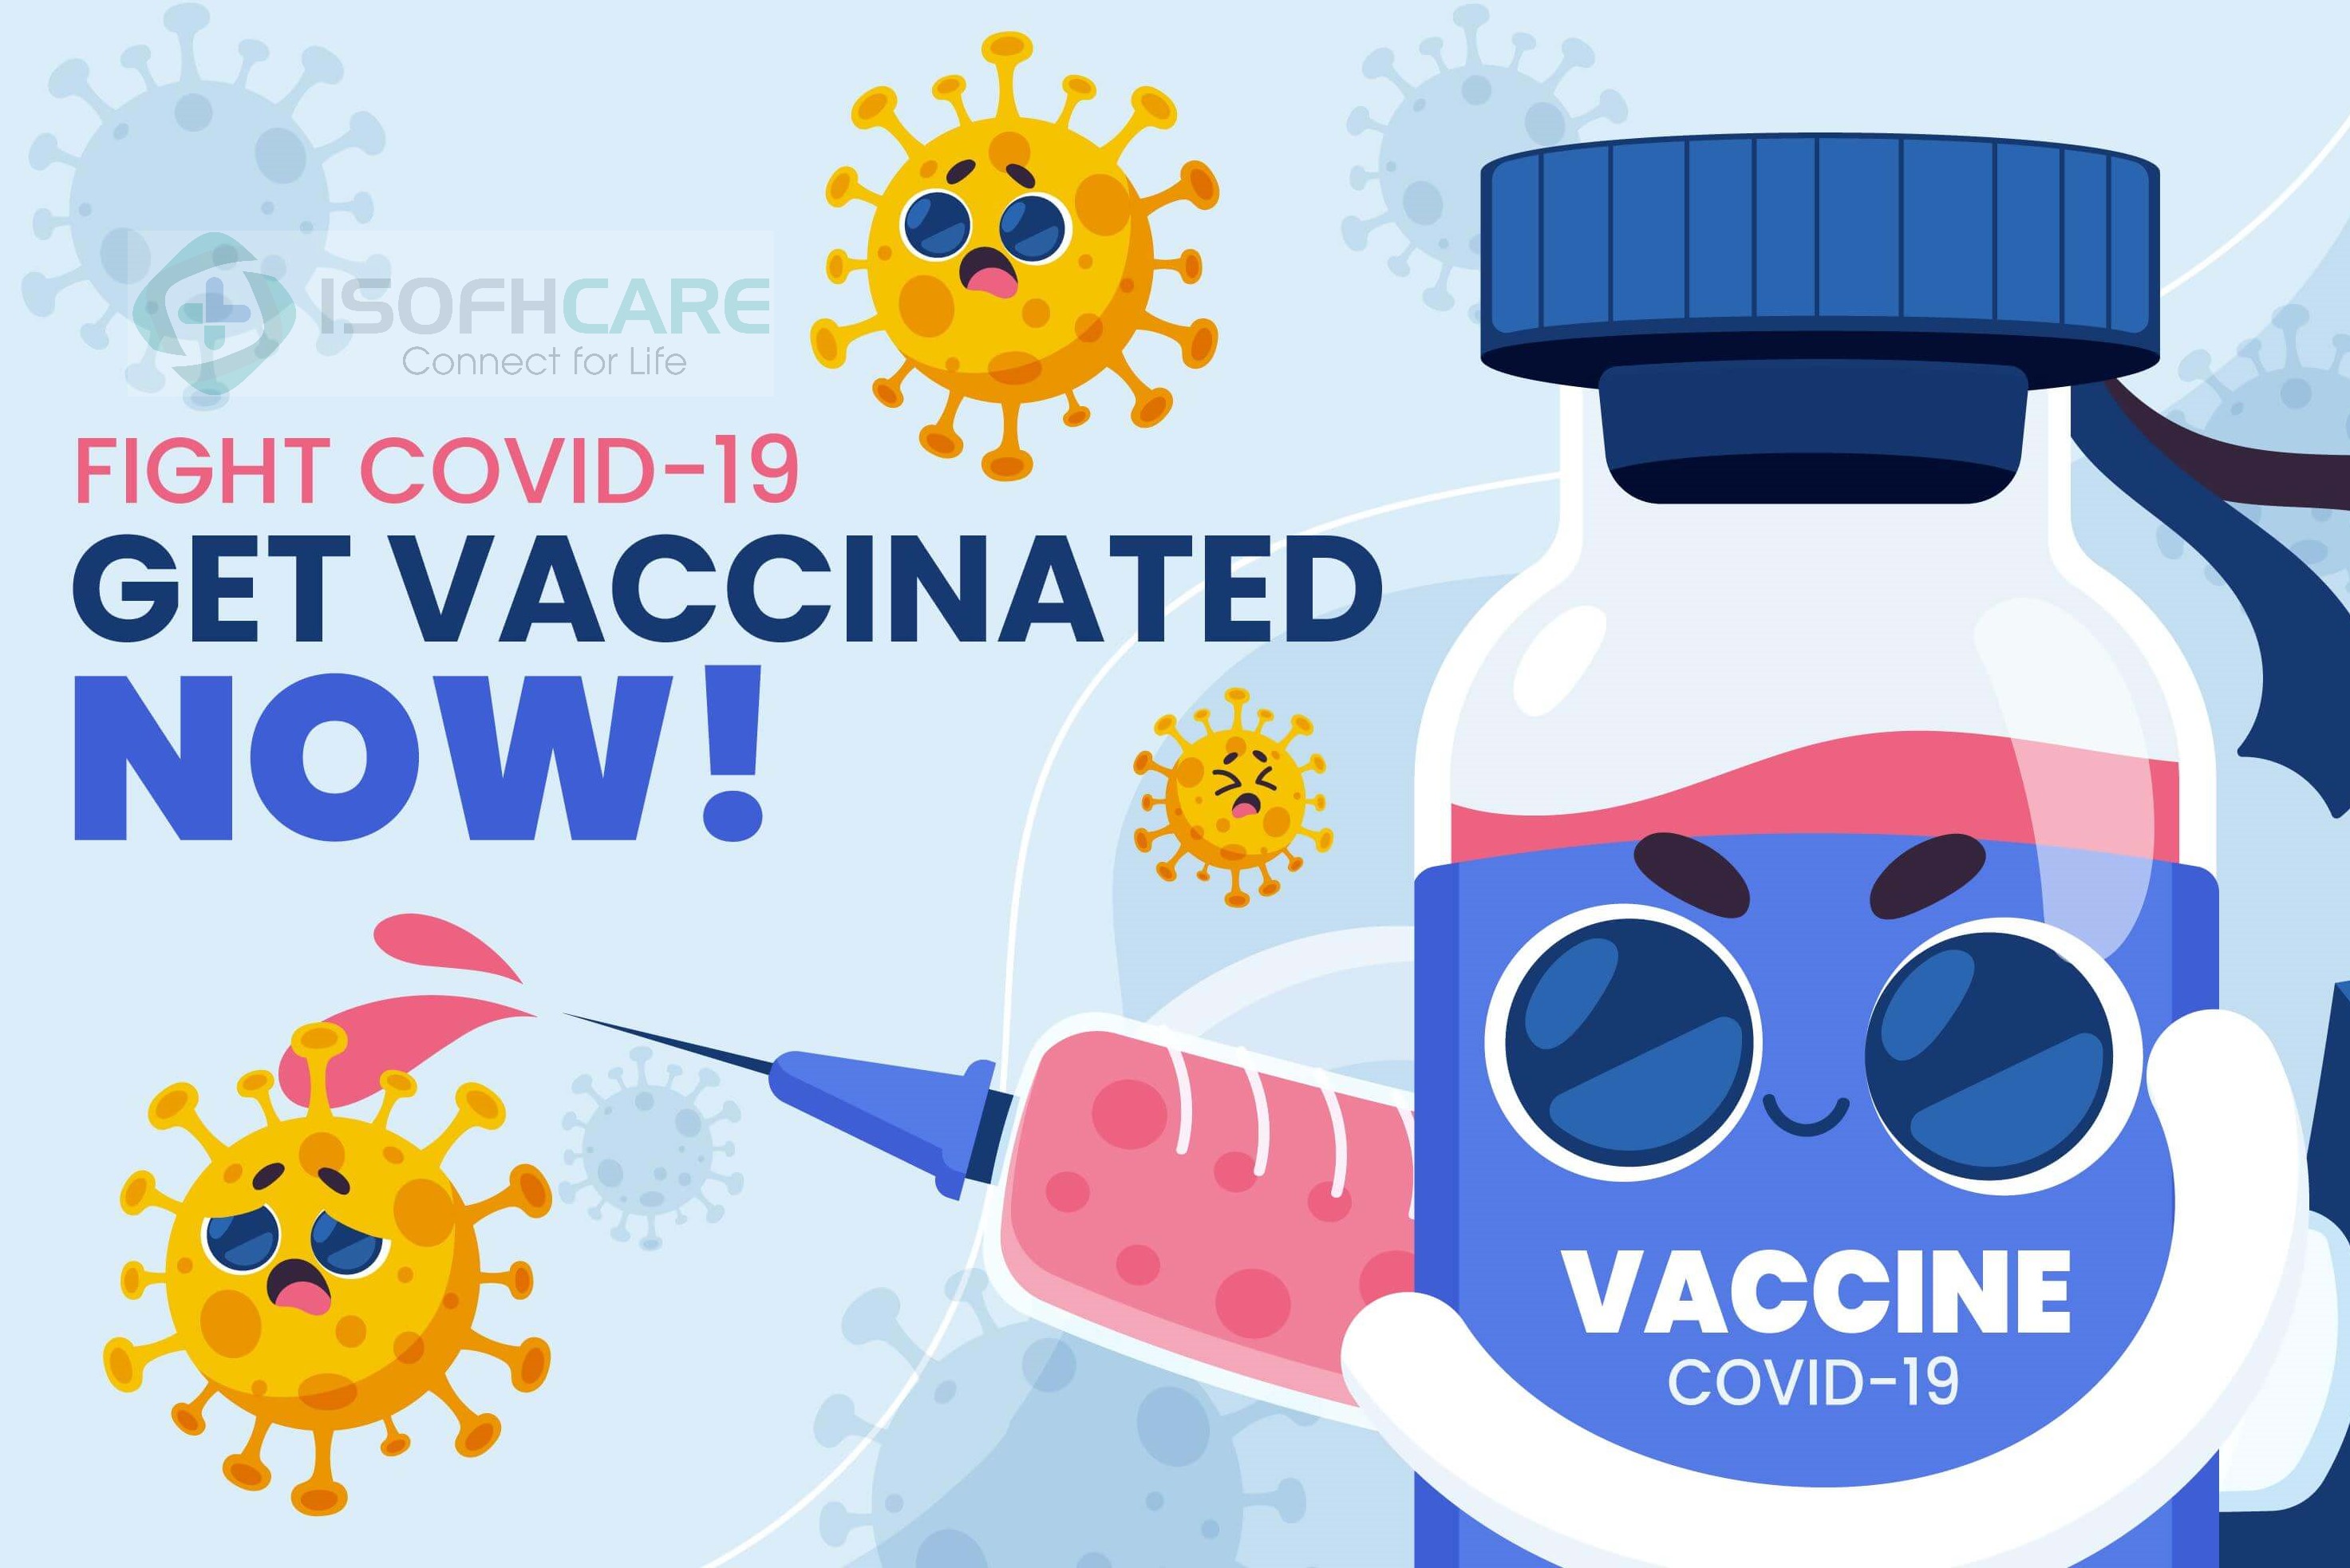 Tiêm vaccine Covid-19 được bảo vệ trong bao lâu?